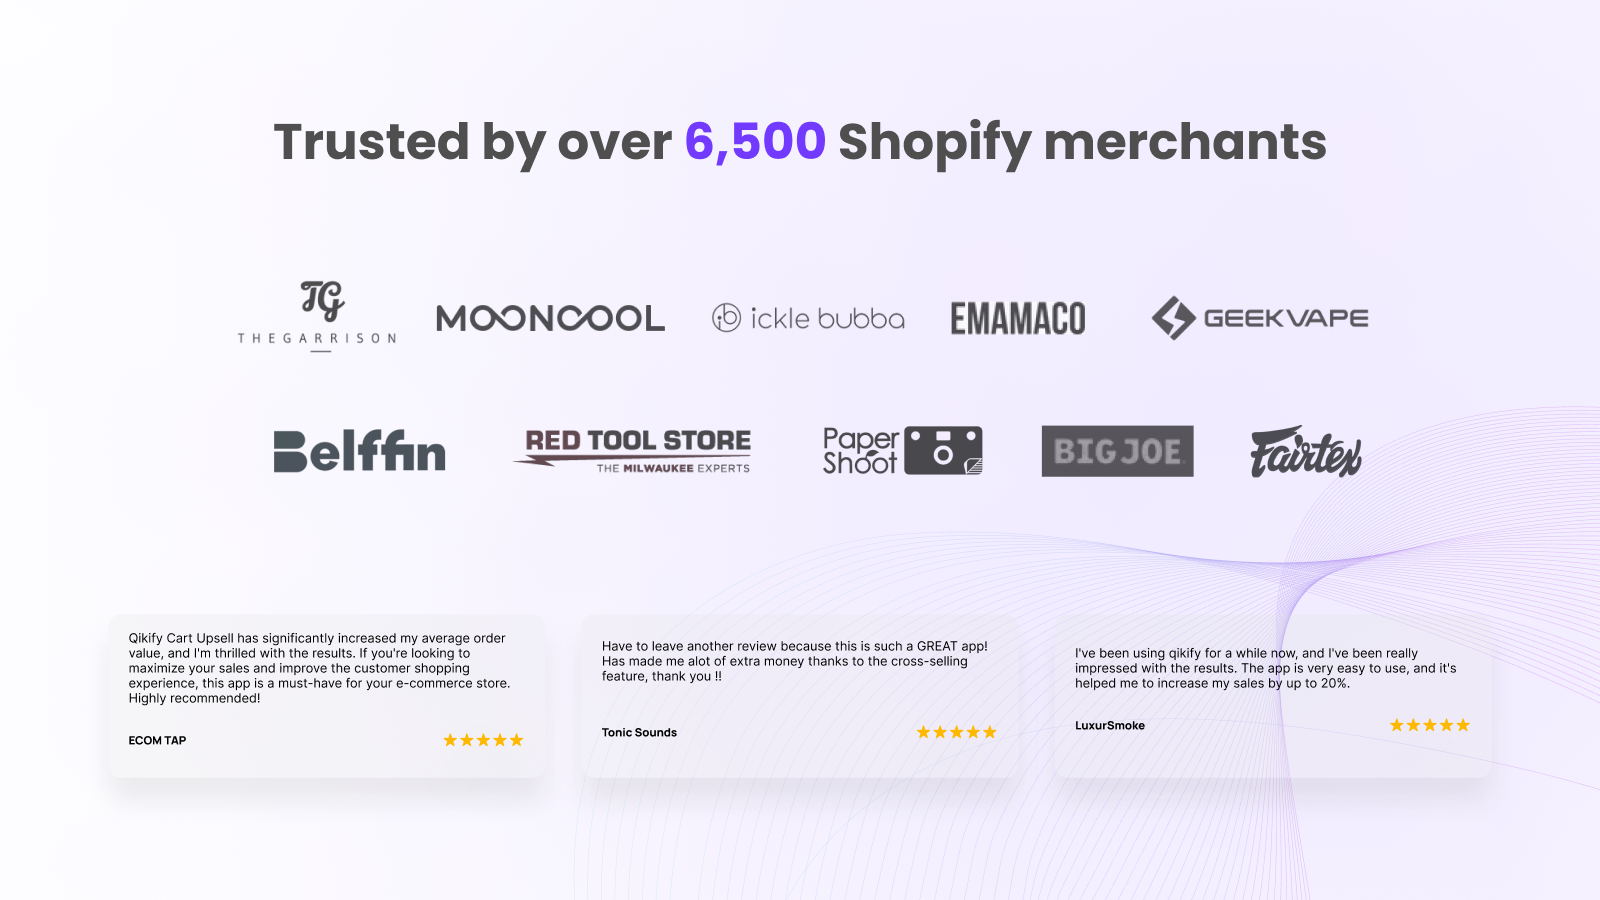 Qikify购物车销售和免费赠品受到超过6500名商家的信任